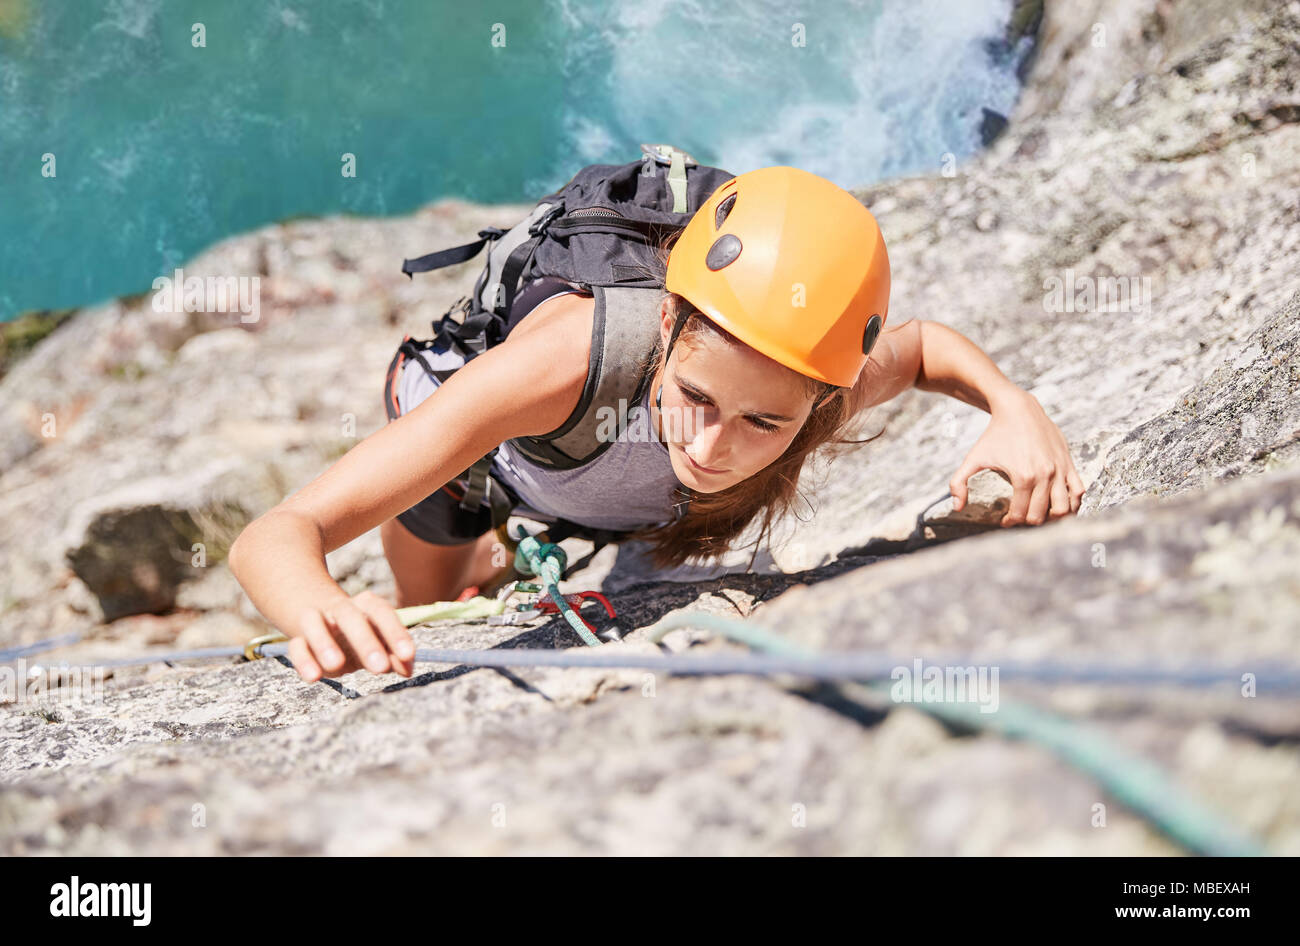 Concentrati, determinata femmina scalatore di roccia di scala Foto Stock